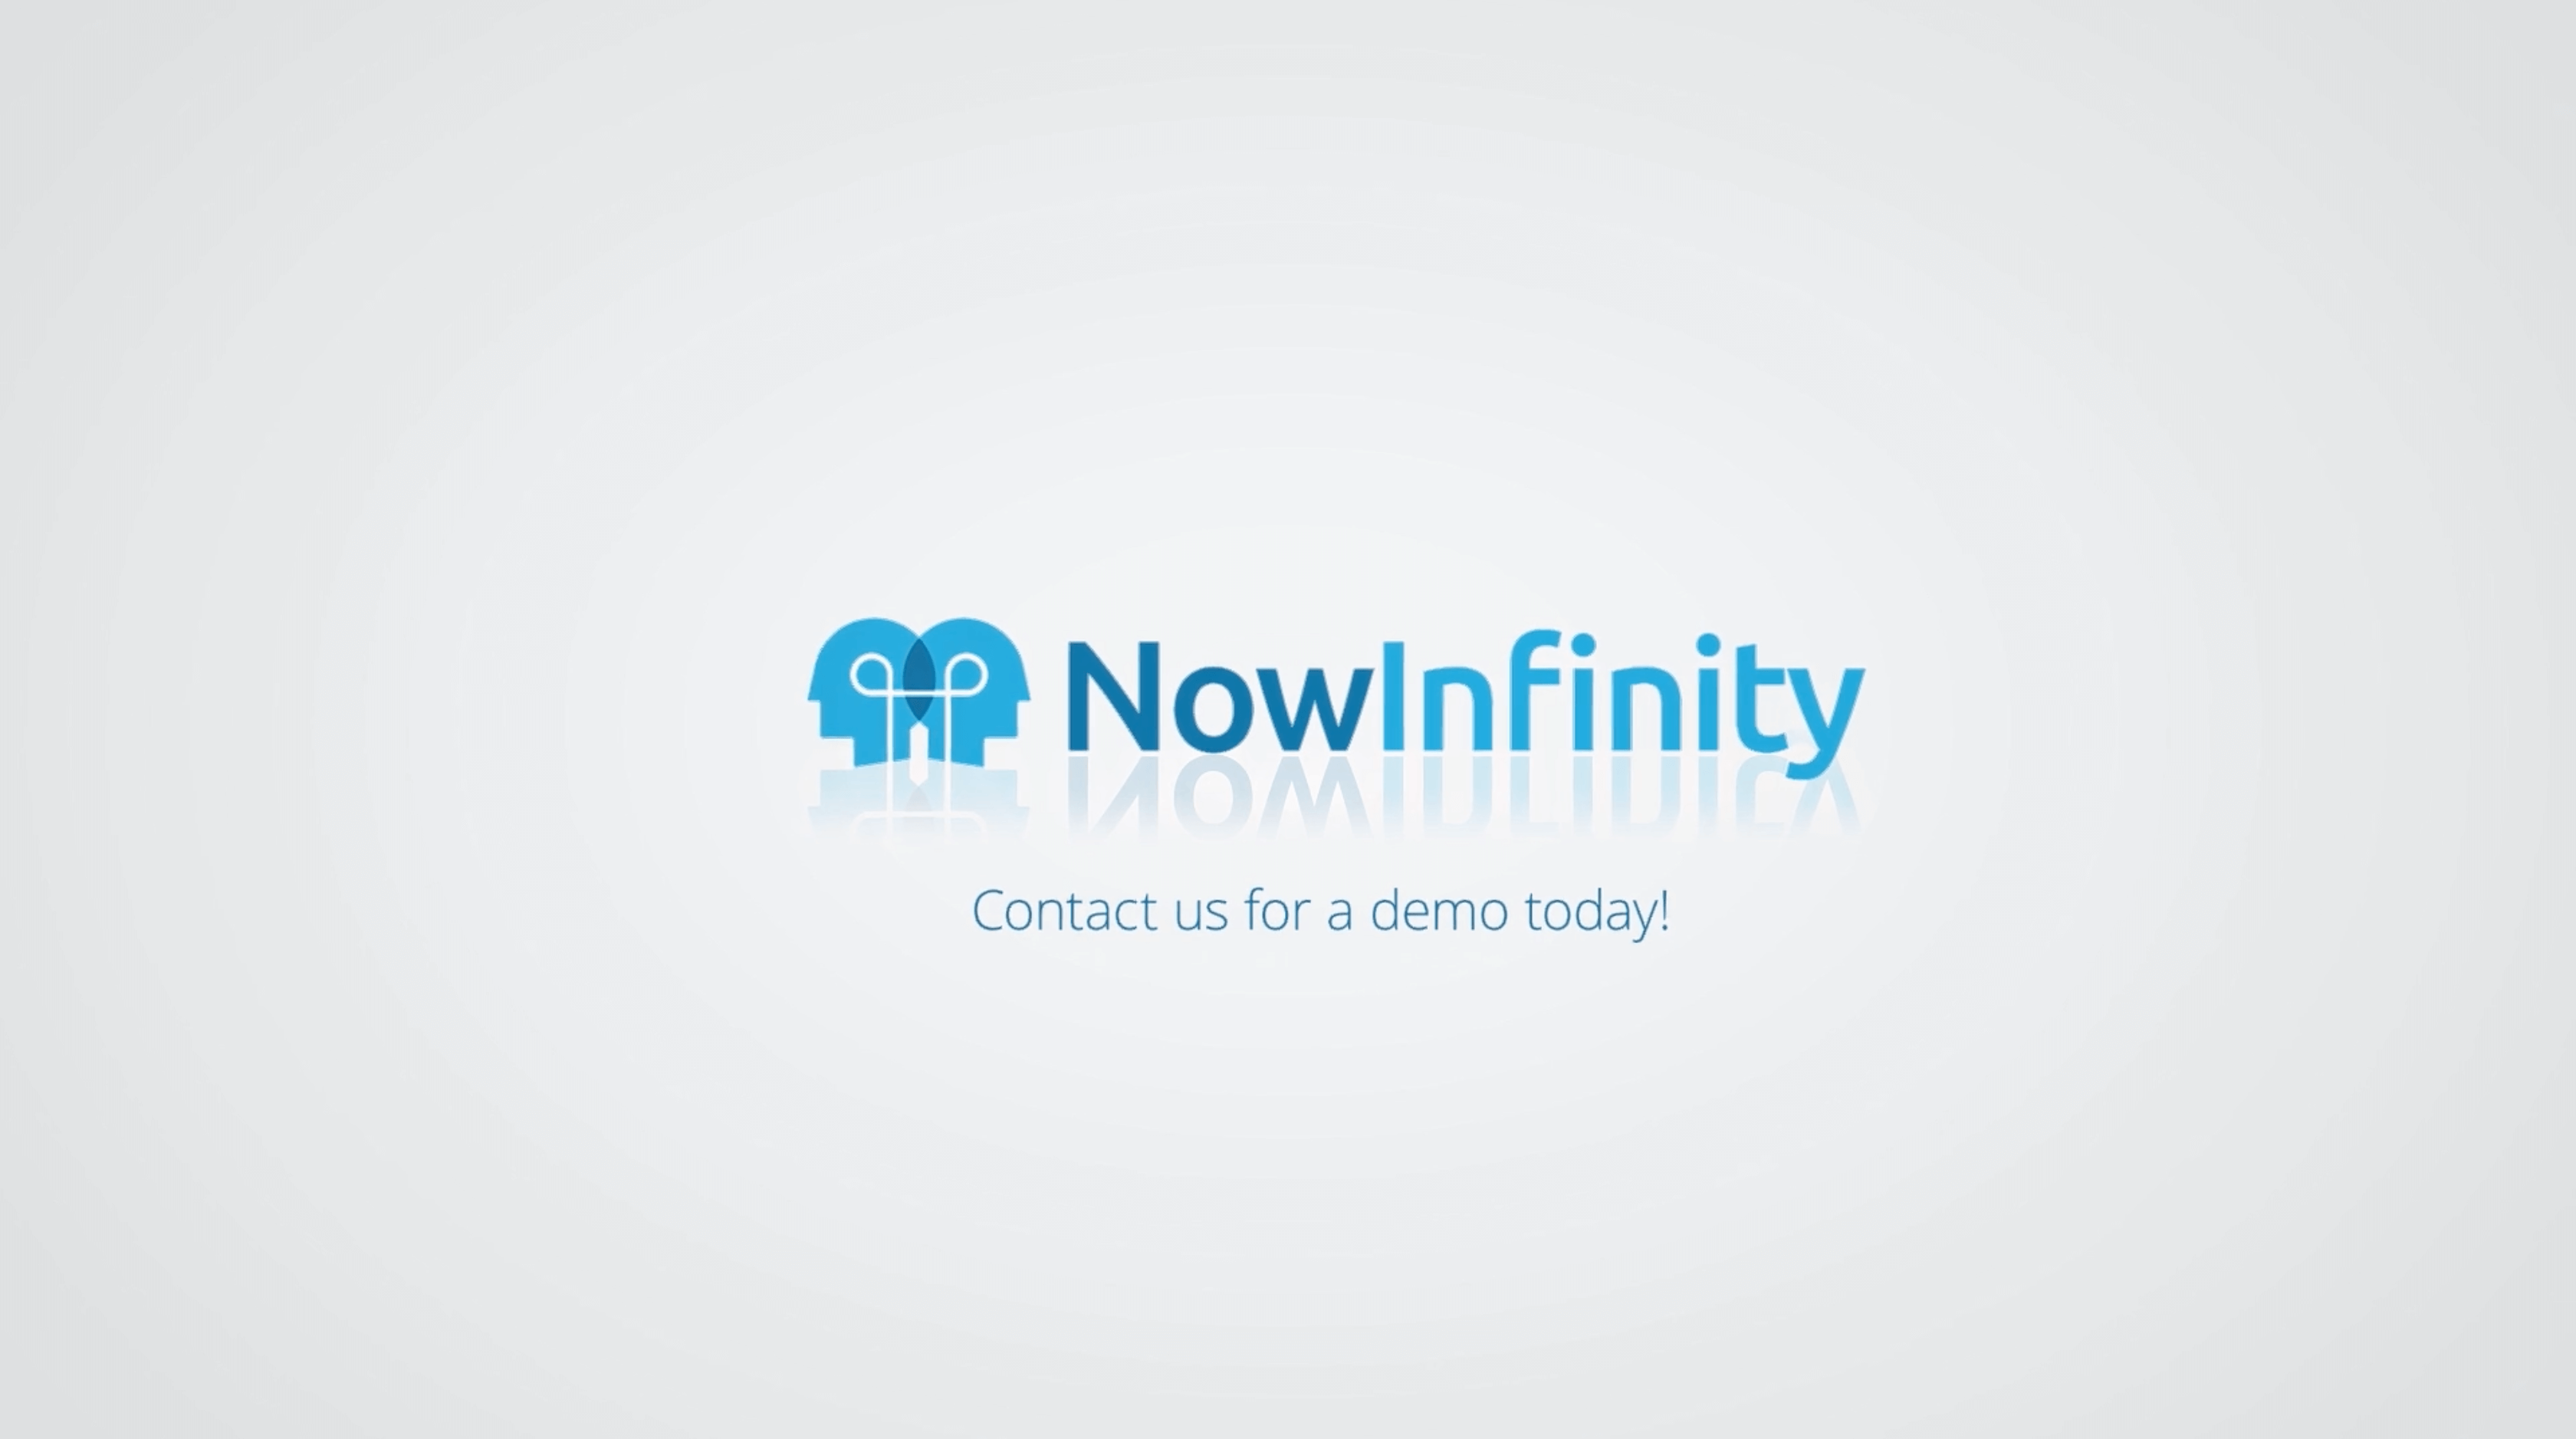 NowInfinity